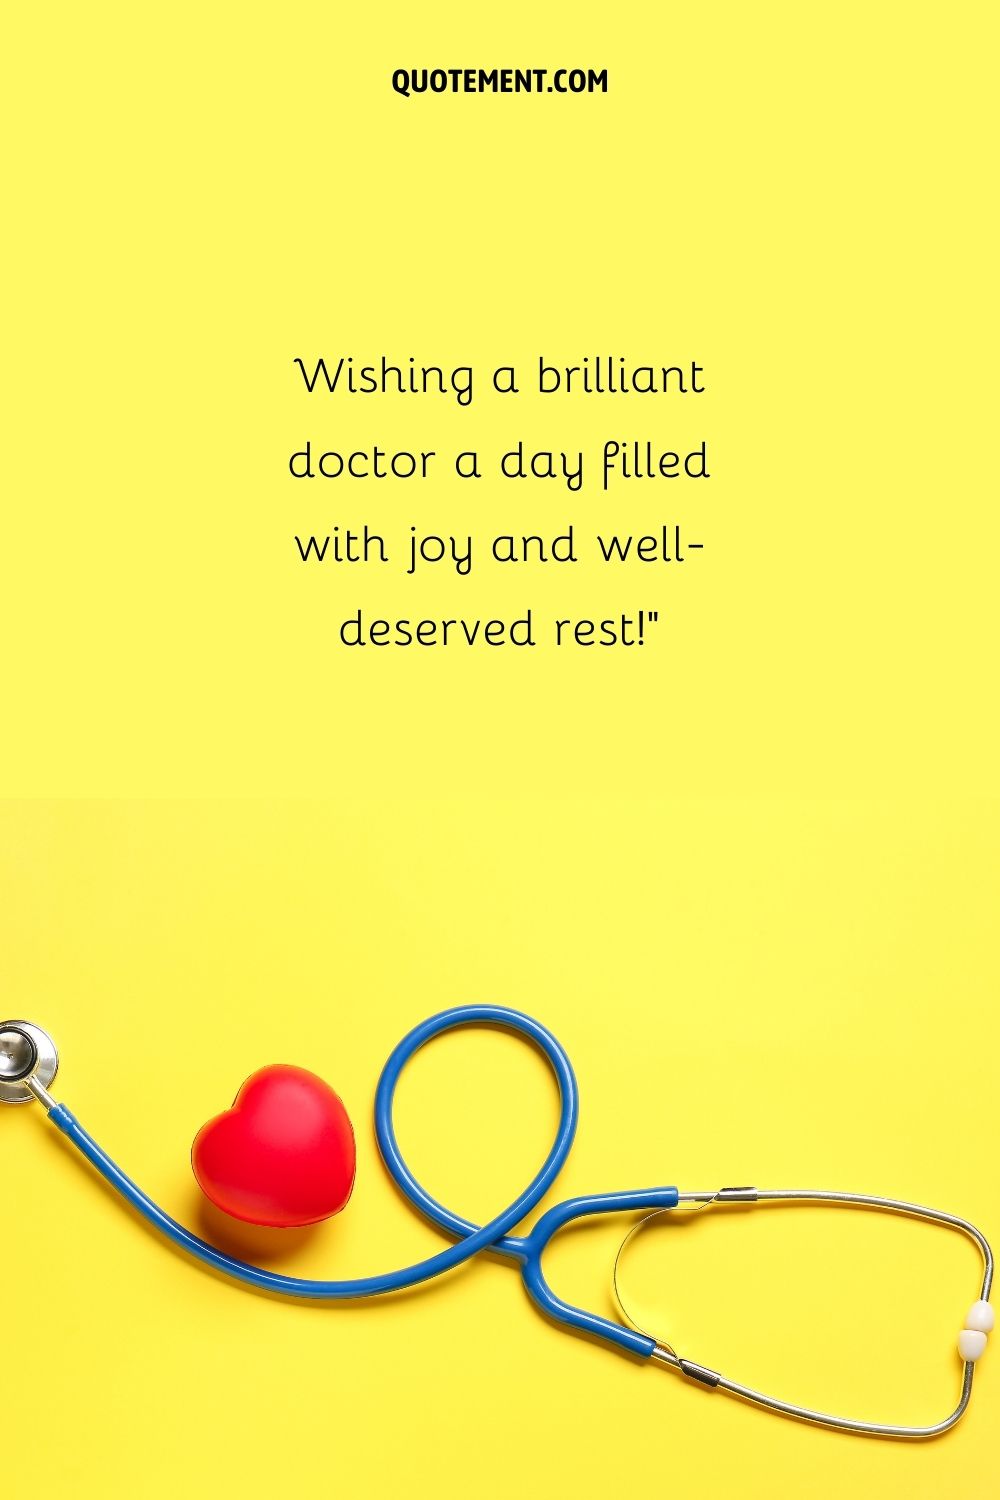 estetoscopio azul con un emoji de corazón que representa un deseo de feliz cumpleaños para el médico